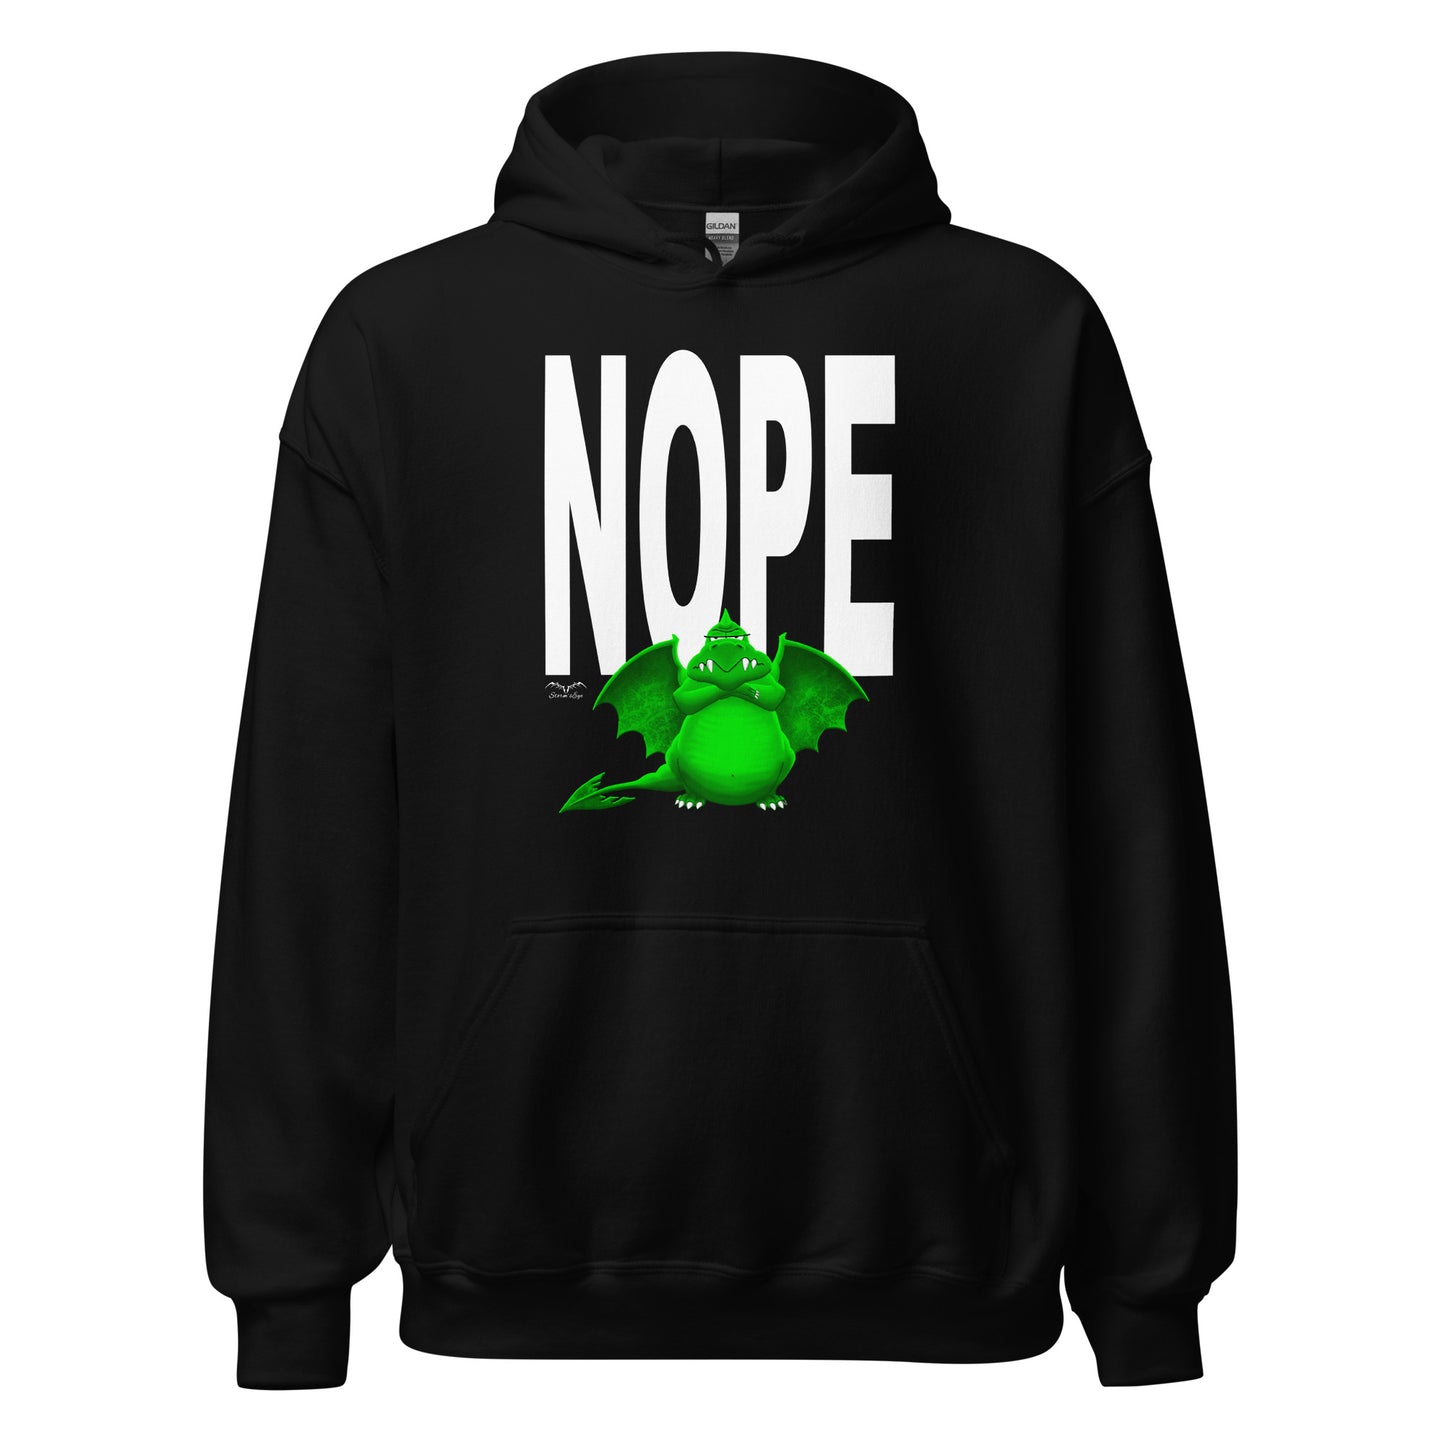 nope dragon bouncer hoodie, black, by Stormseye Design